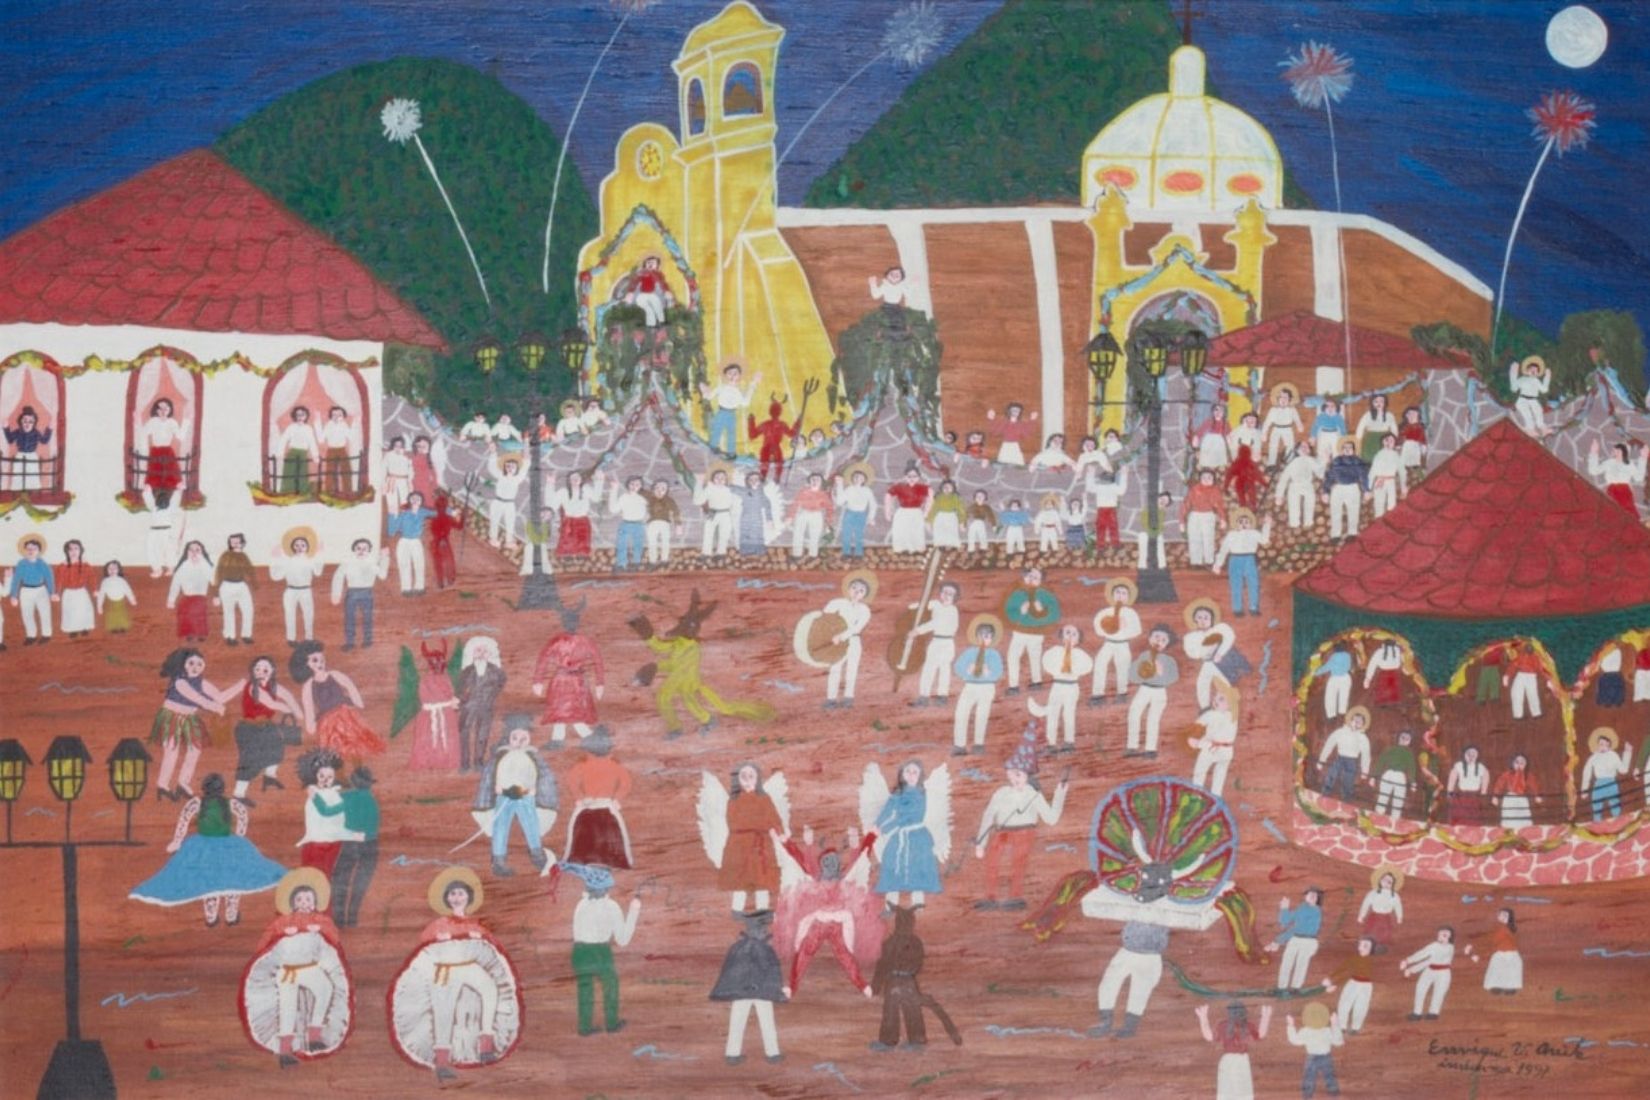 Carnaval del pueblo. Acrílico sobre madera. Artesano Enrique Velázquez Ávila. Tepozotlán, EdoMex. Col. Part. (Foto: EKV).